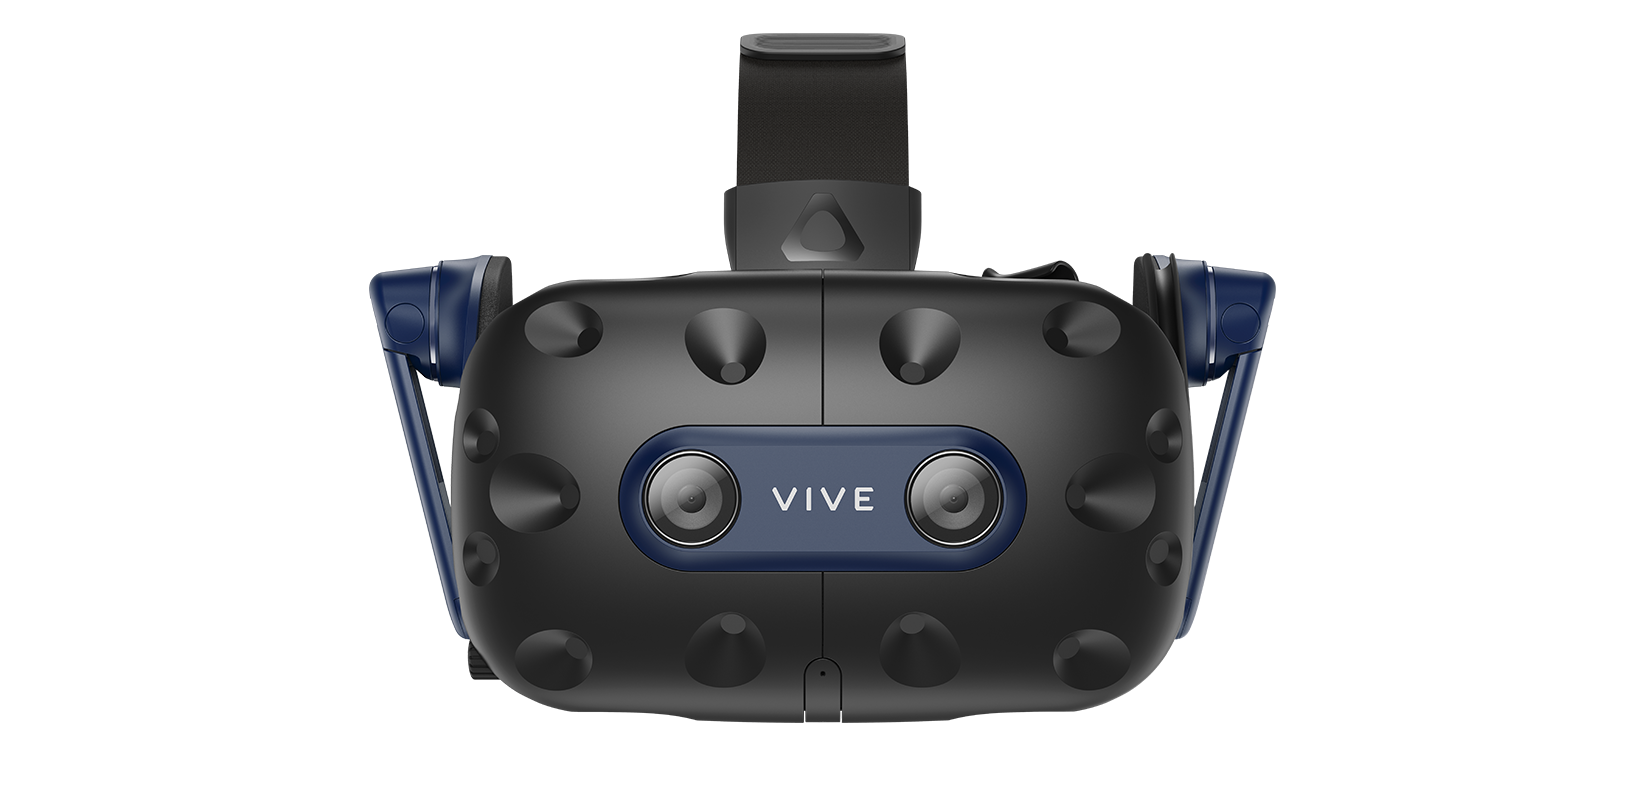 VIVE Pro 2 頭戴式顯示器